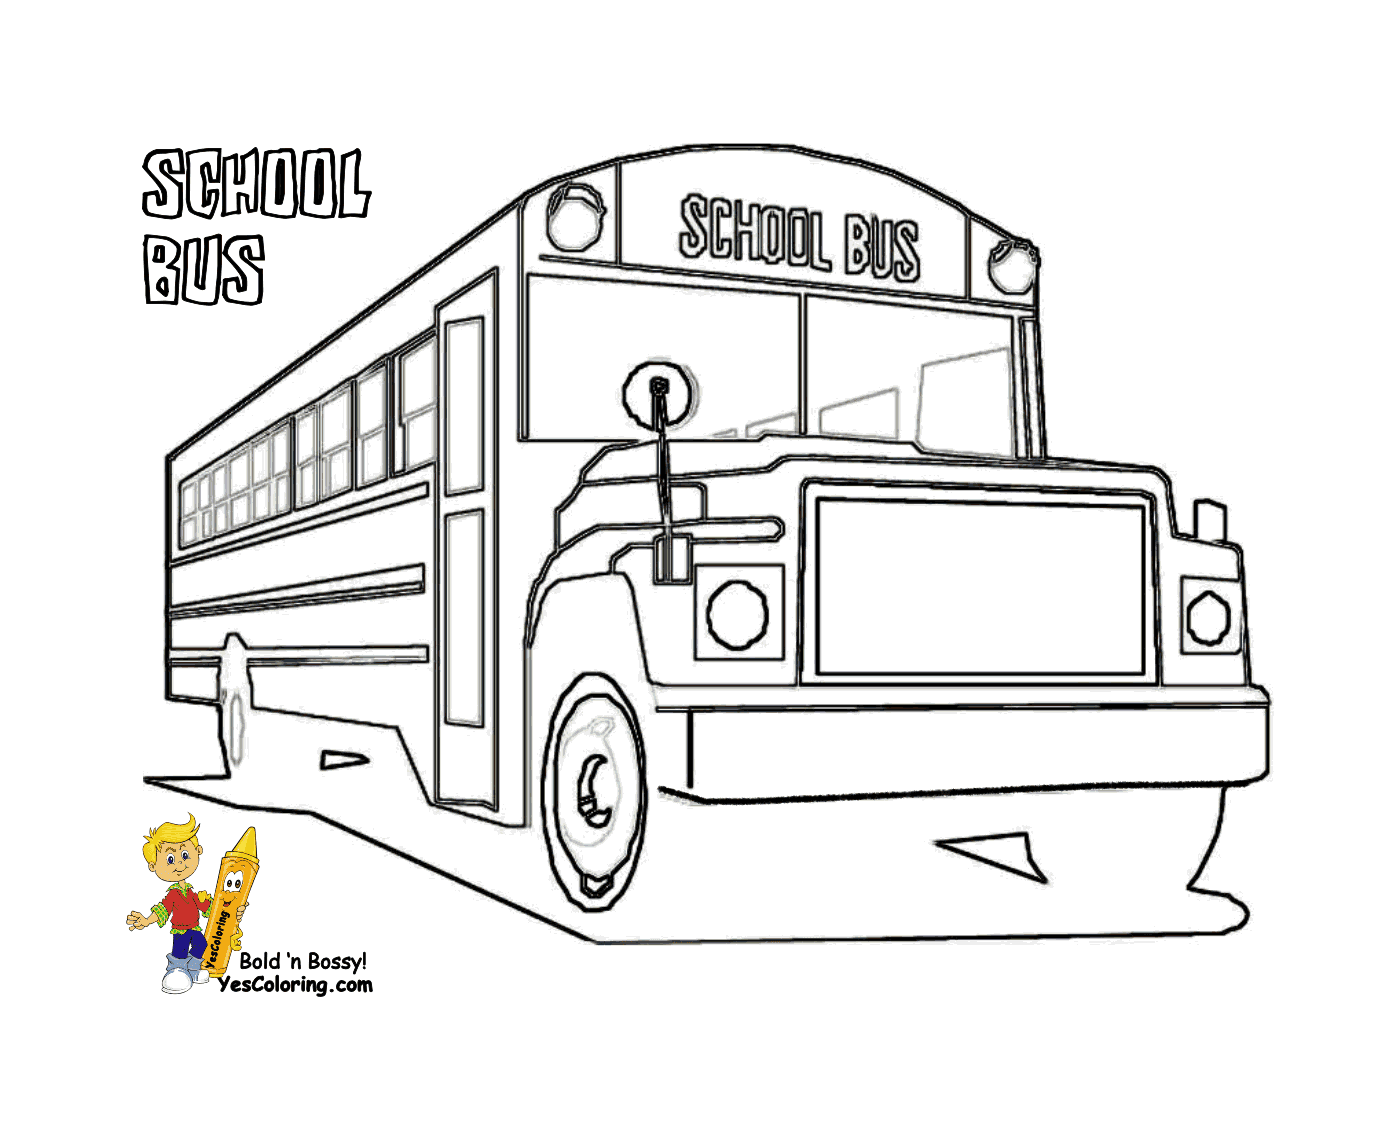  Uno scuolabus è alla fermata 